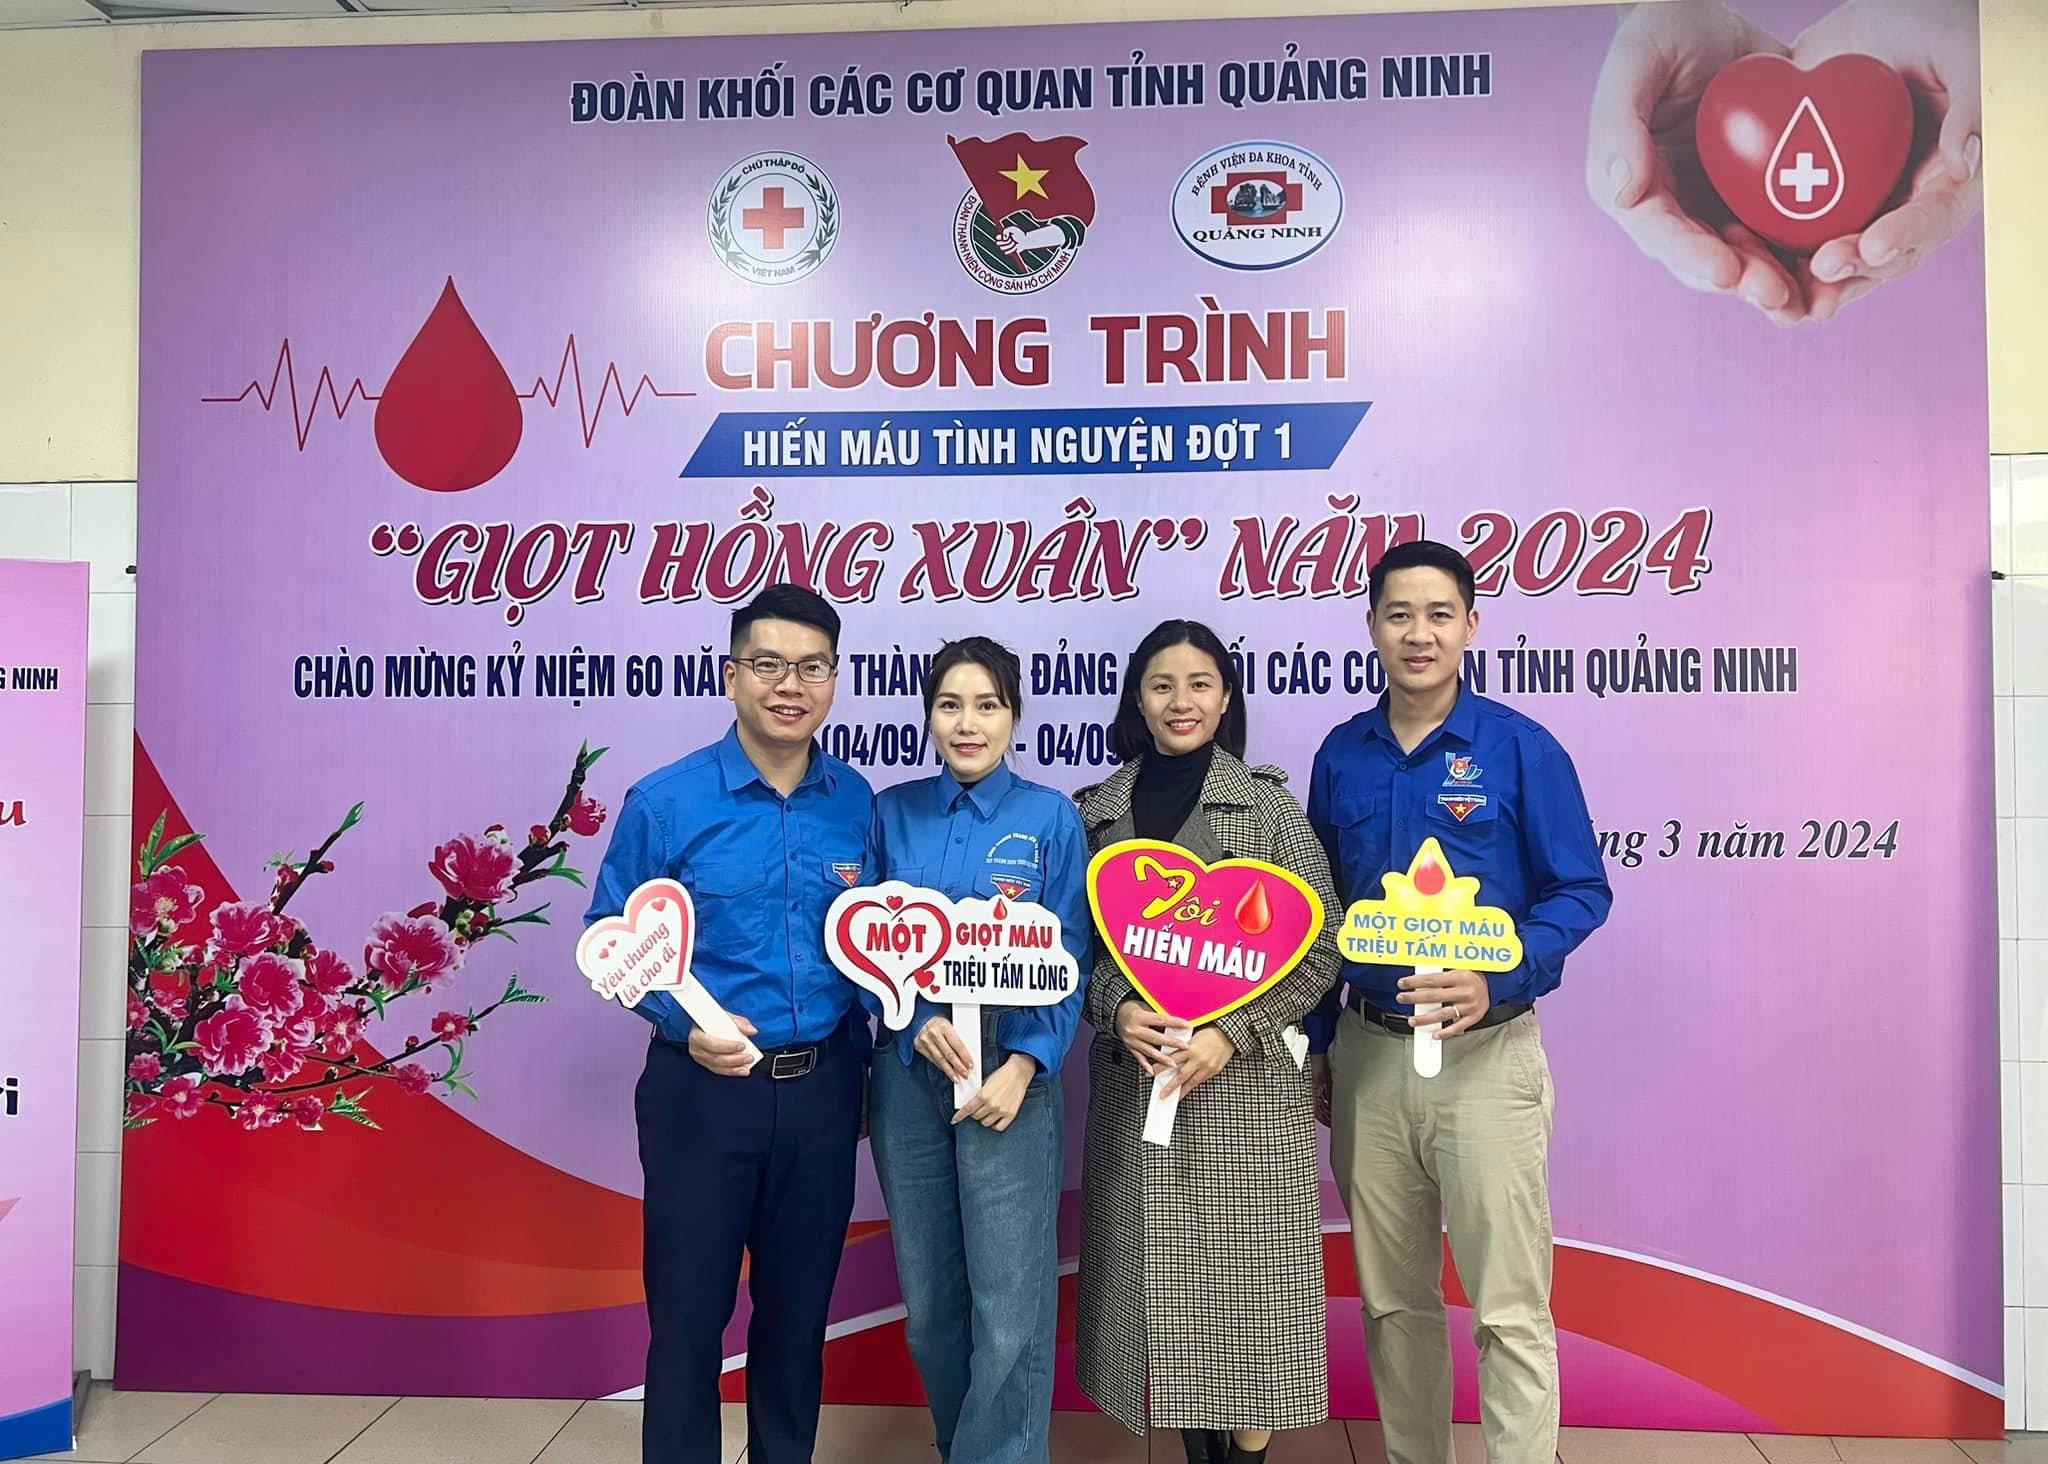 Chi đoàn trường Đào tạo cán bộ Nguyễn Văn Cừ hưởng ứng chương trình hiến máu tình nguyện “Giọt hồng xuân” do Đoàn Khối các cơ quan tỉnh Quảng Ninh tổ chức.